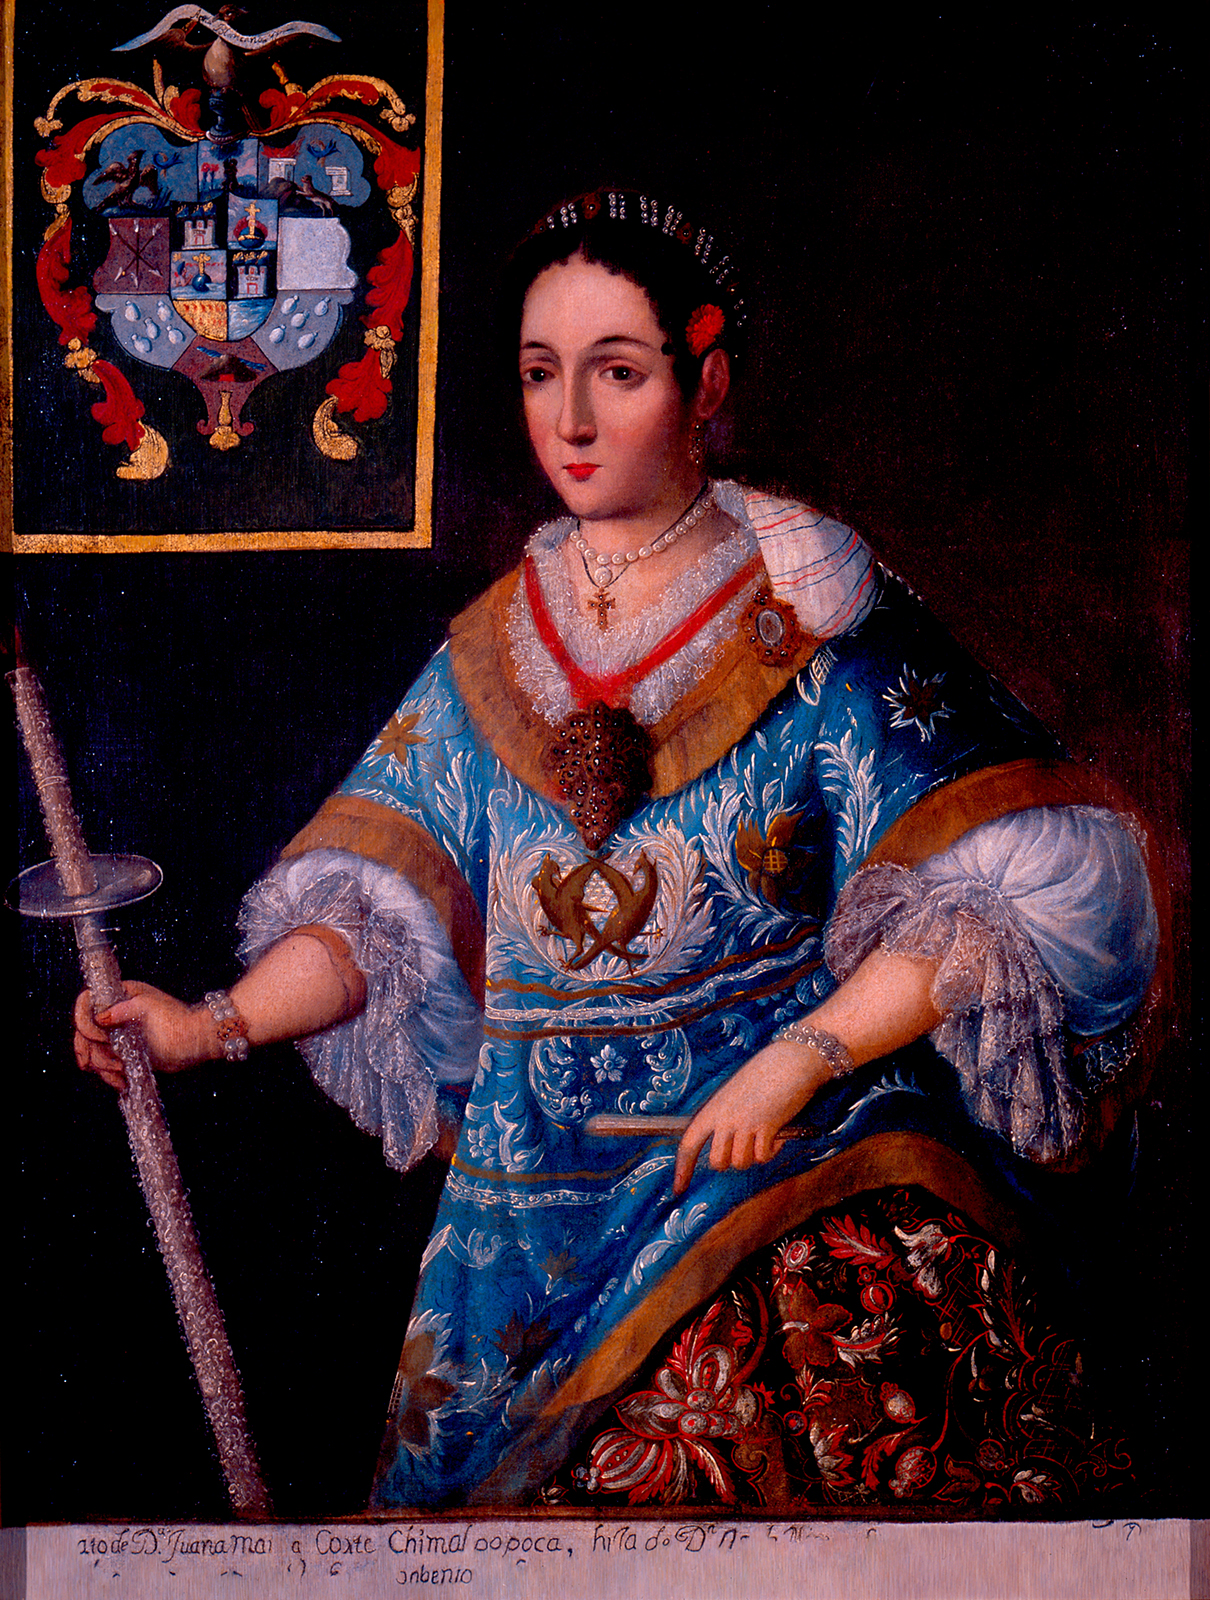 Doña Juana María Cortés y Chimalpopoca